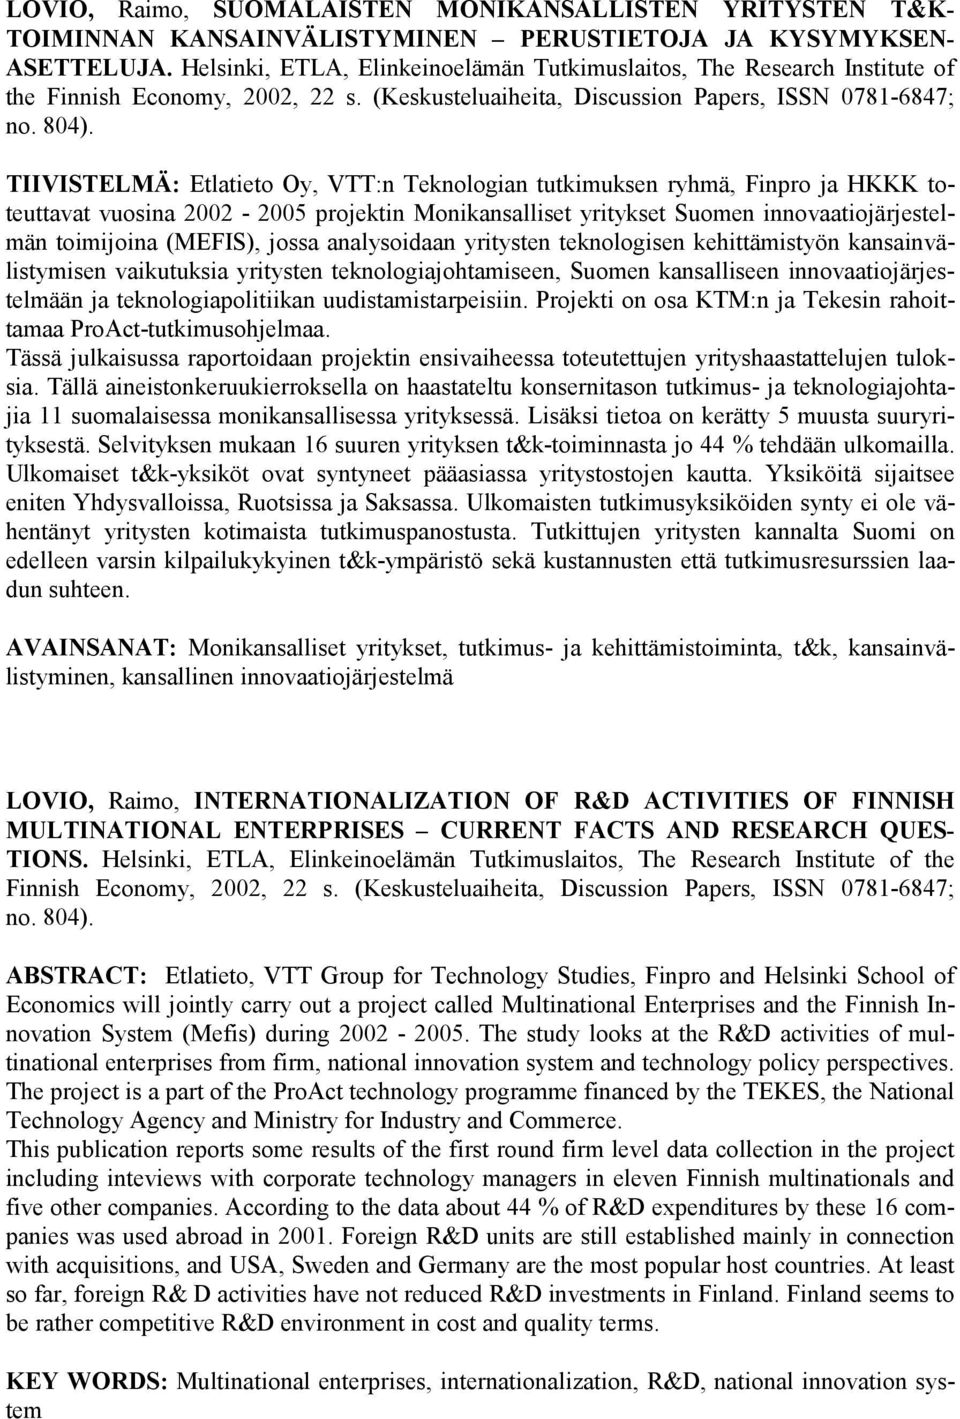 TIIVISTELMÄ: Etlatieto Oy, VTT:n Teknologian tutkimuksen ryhmä, Finpro ja HKKK toteuttavat vuosina 2002-2005 projektin Monikansalliset yritykset Suomen innovaatiojärjestelmän toimijoina (MEFIS),